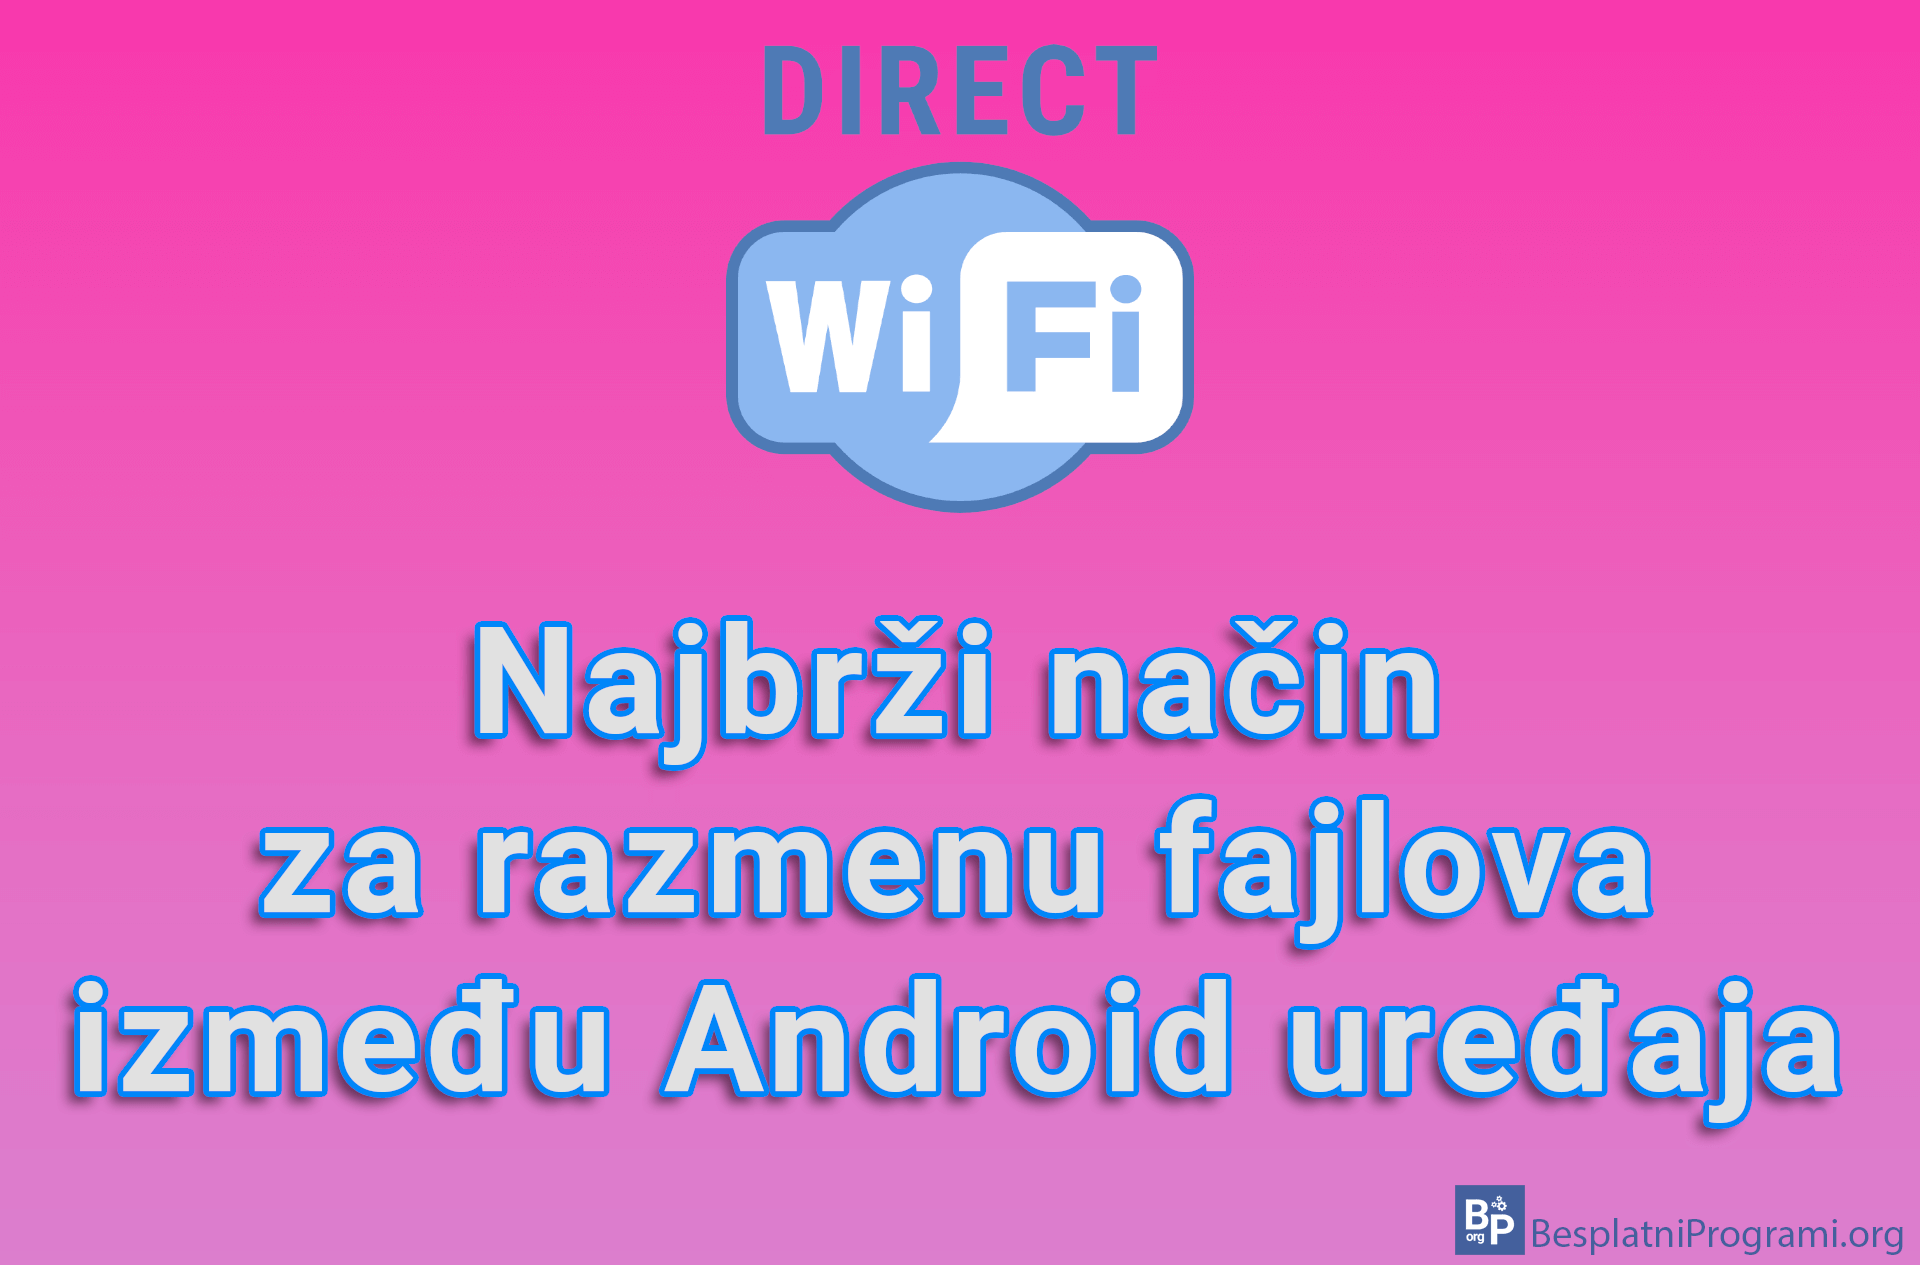 Wi-Fi Direct – Najbrži način za razmenu fajlova između Android uređaja